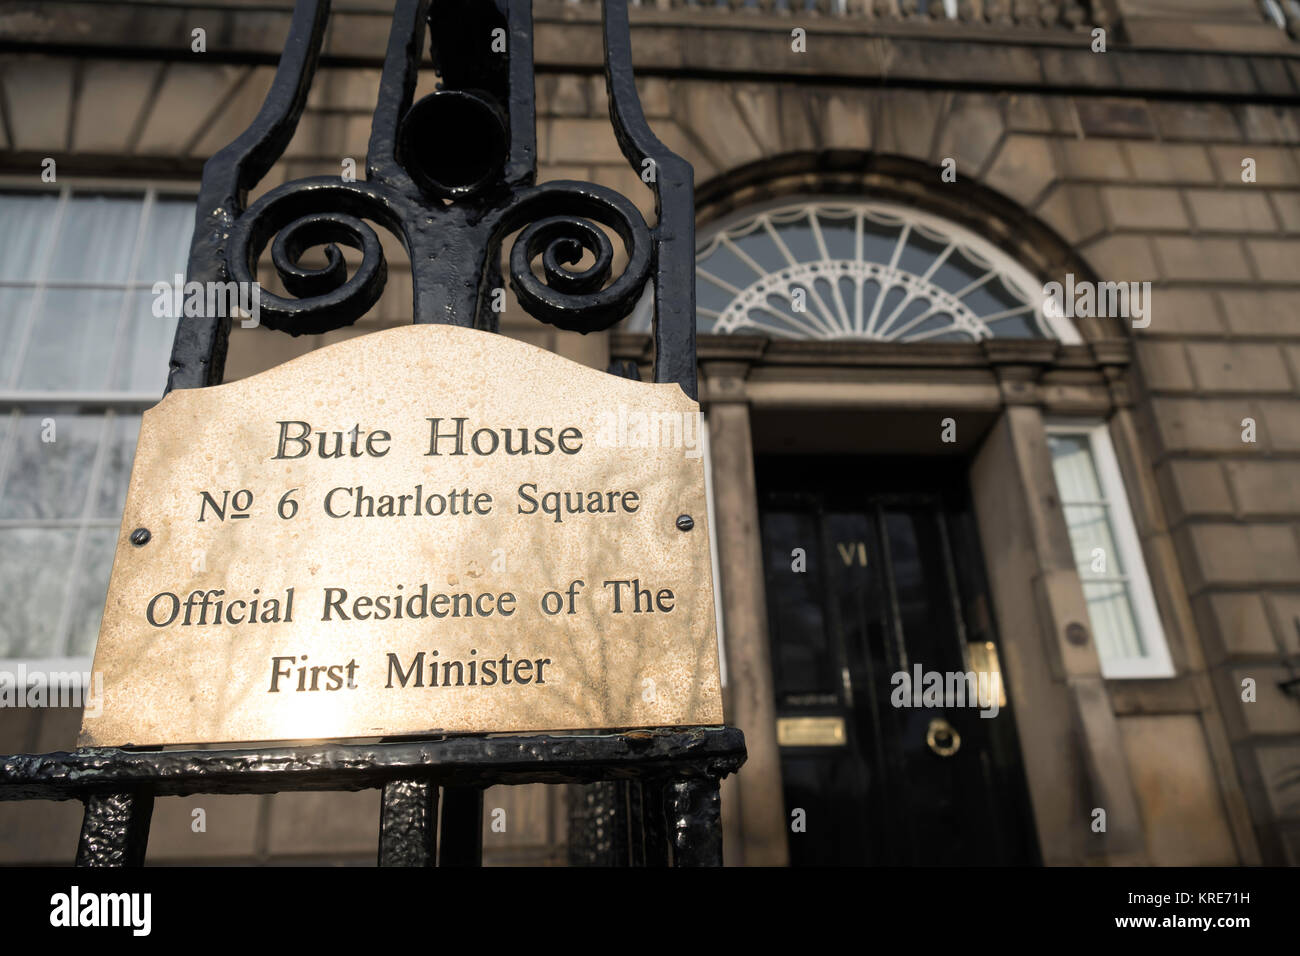 Dettaglio della targhetta di fabbrica a Bute House, la residenza ufficiale del Primo ministro di Scozia in Charlotte Square , Edimburgo, Scozia, Regno Unito Foto Stock